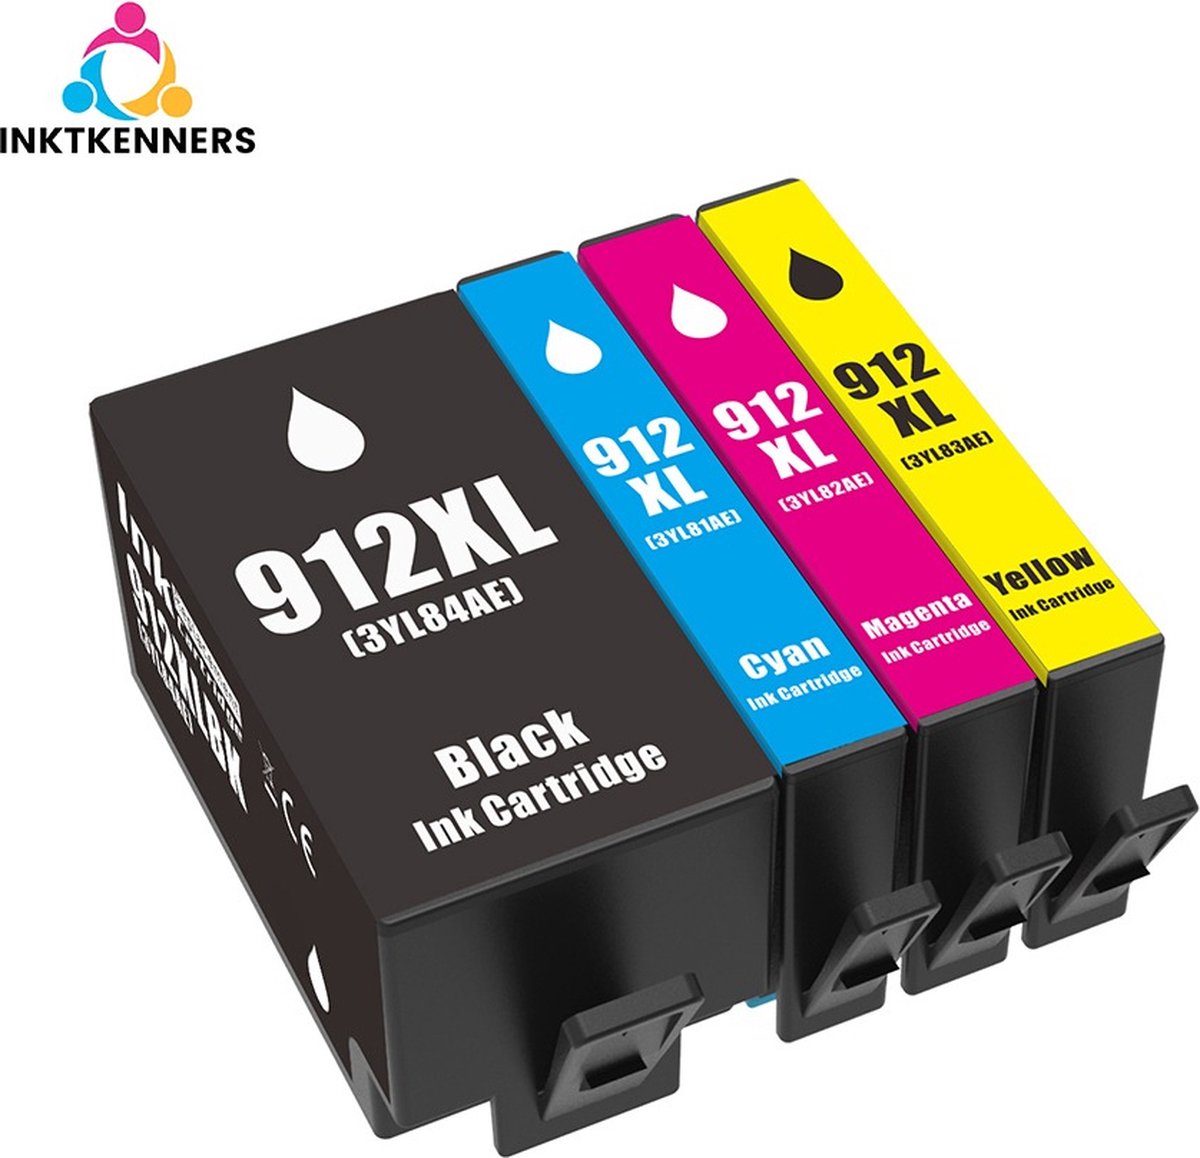 Inktcartridges voor HP 912 / 912XL | EXTRA VOLUME - Multipack van 4 stuks geschikt voor HP OfficeJet Pro 8010 - 8012 - 8014 - 8015 - 8020 - 8022 - 8023 - 8024 - 8025 | inkt - patronen - cartridge